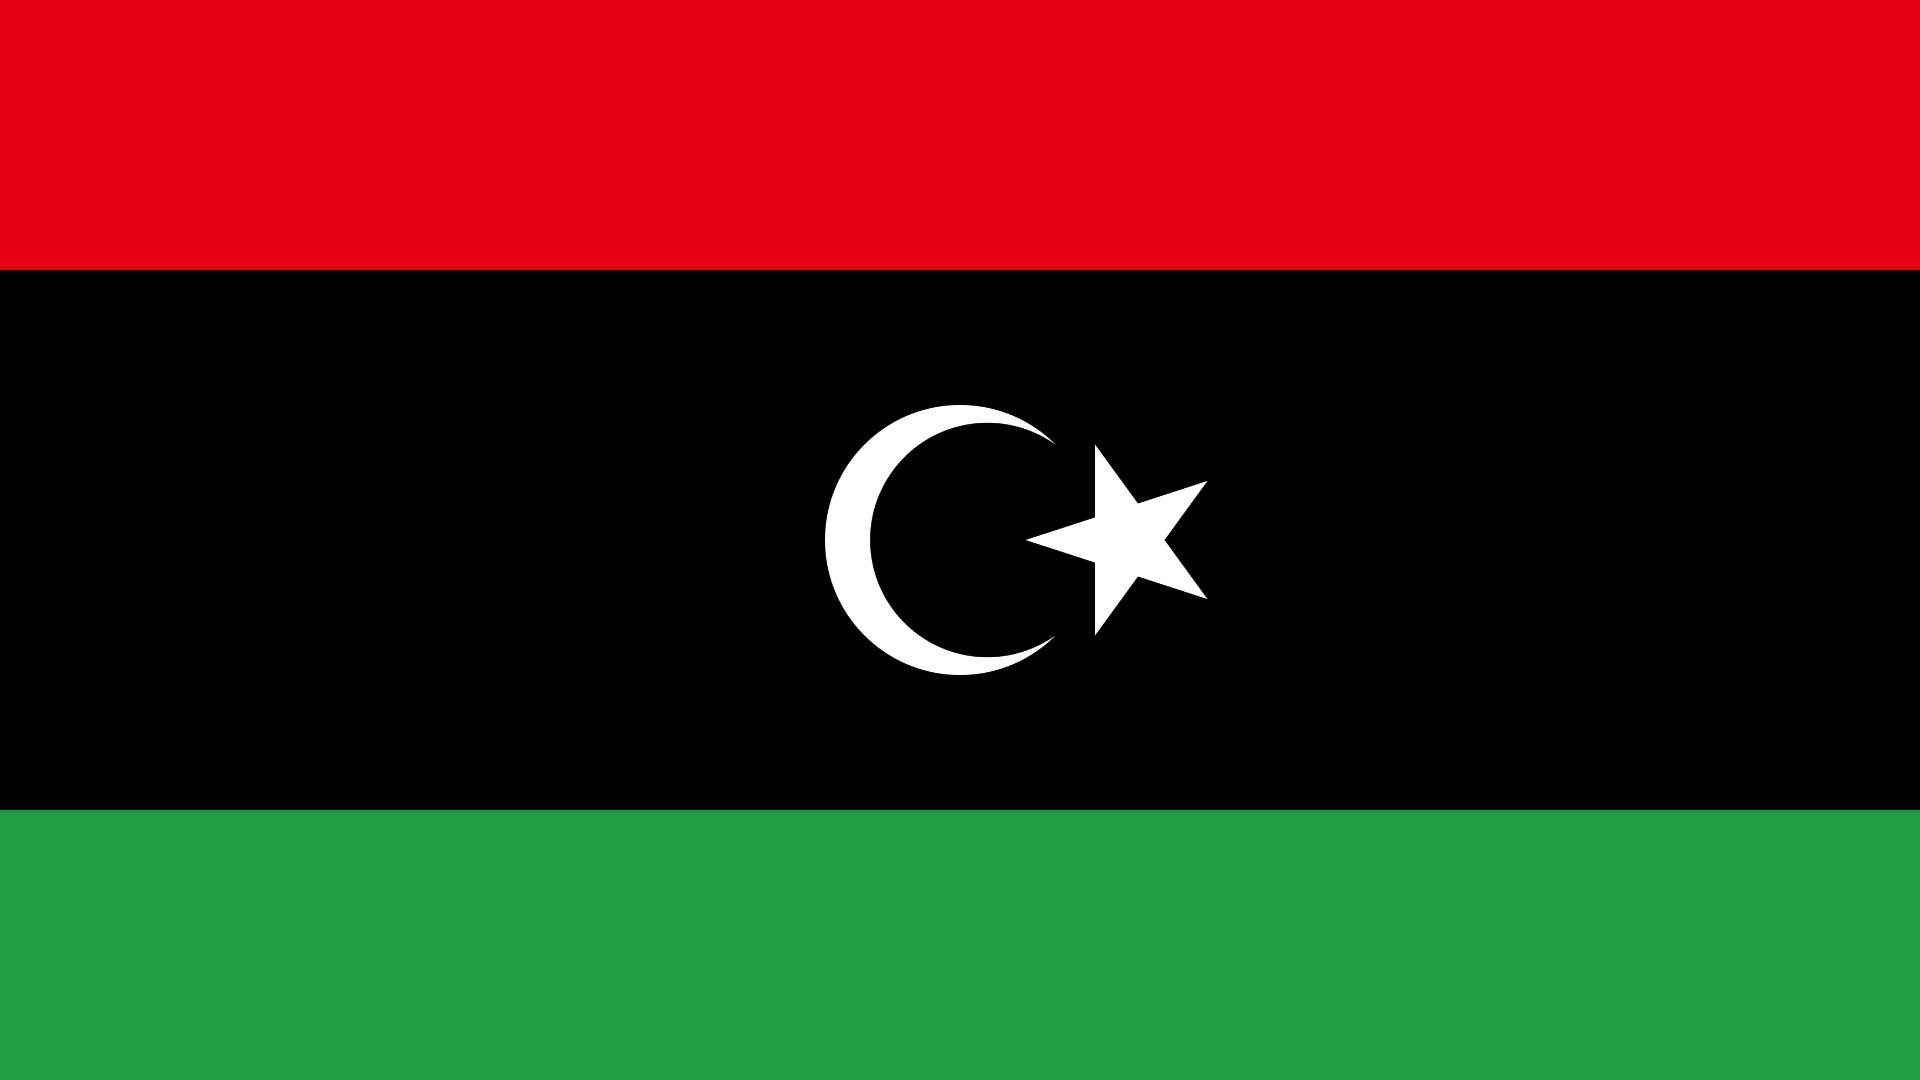 Bandeira com três faixas horizontais, sendo vermelha na parte superior, preta a central e verde a inferior.​ No centro da faixa preta aparecem uma lua crescente e uma estrela de cinco pontas, ambas de cor branca.